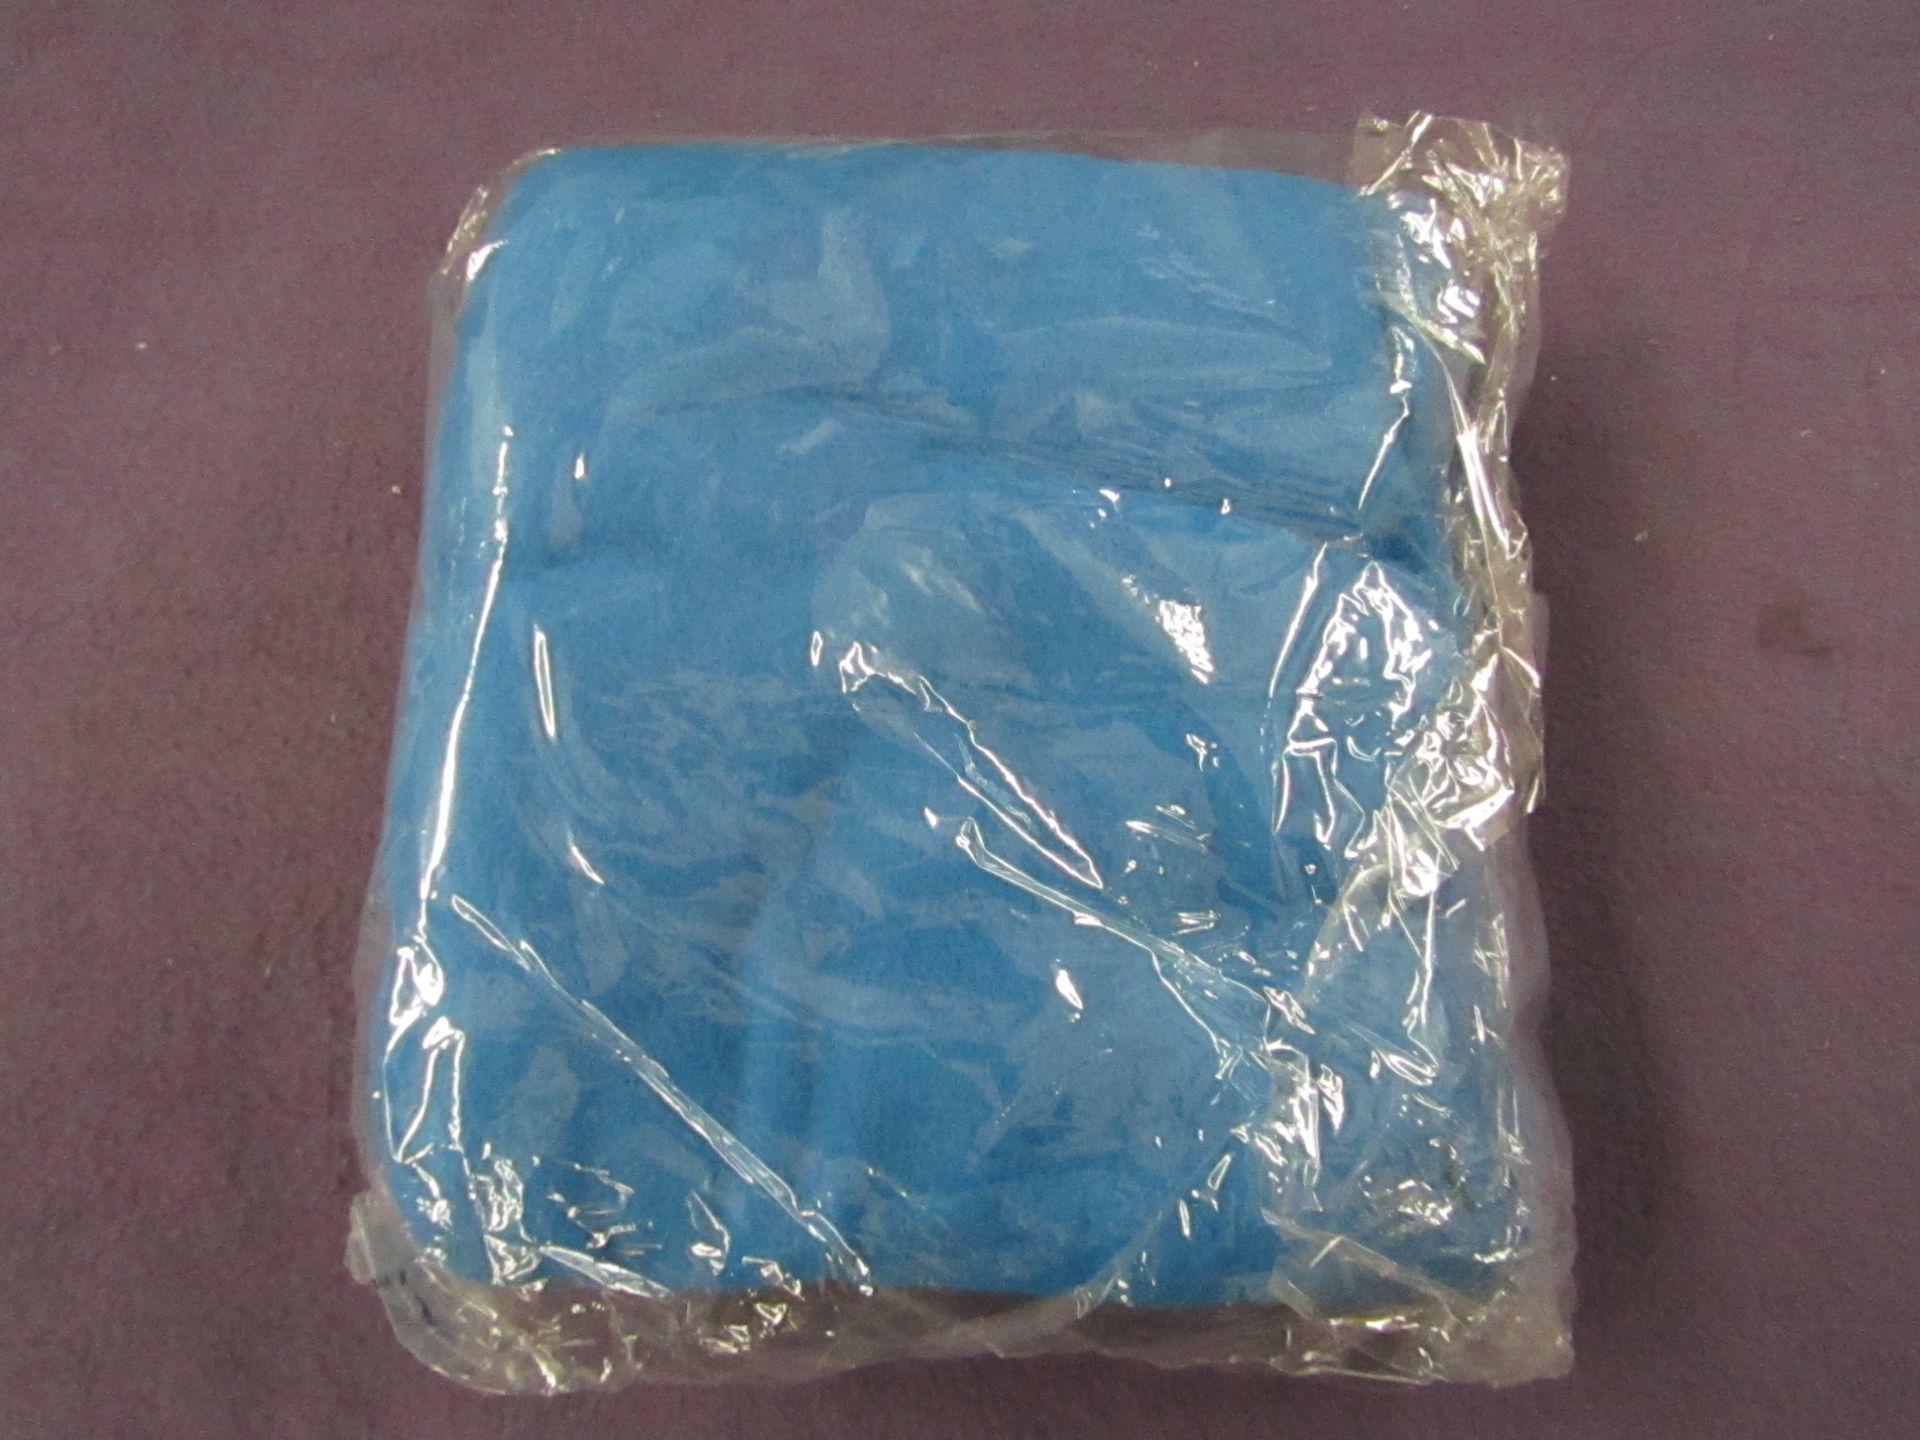 2x Unbranded - Blue Fleece Blankets - Unused & Packaged.